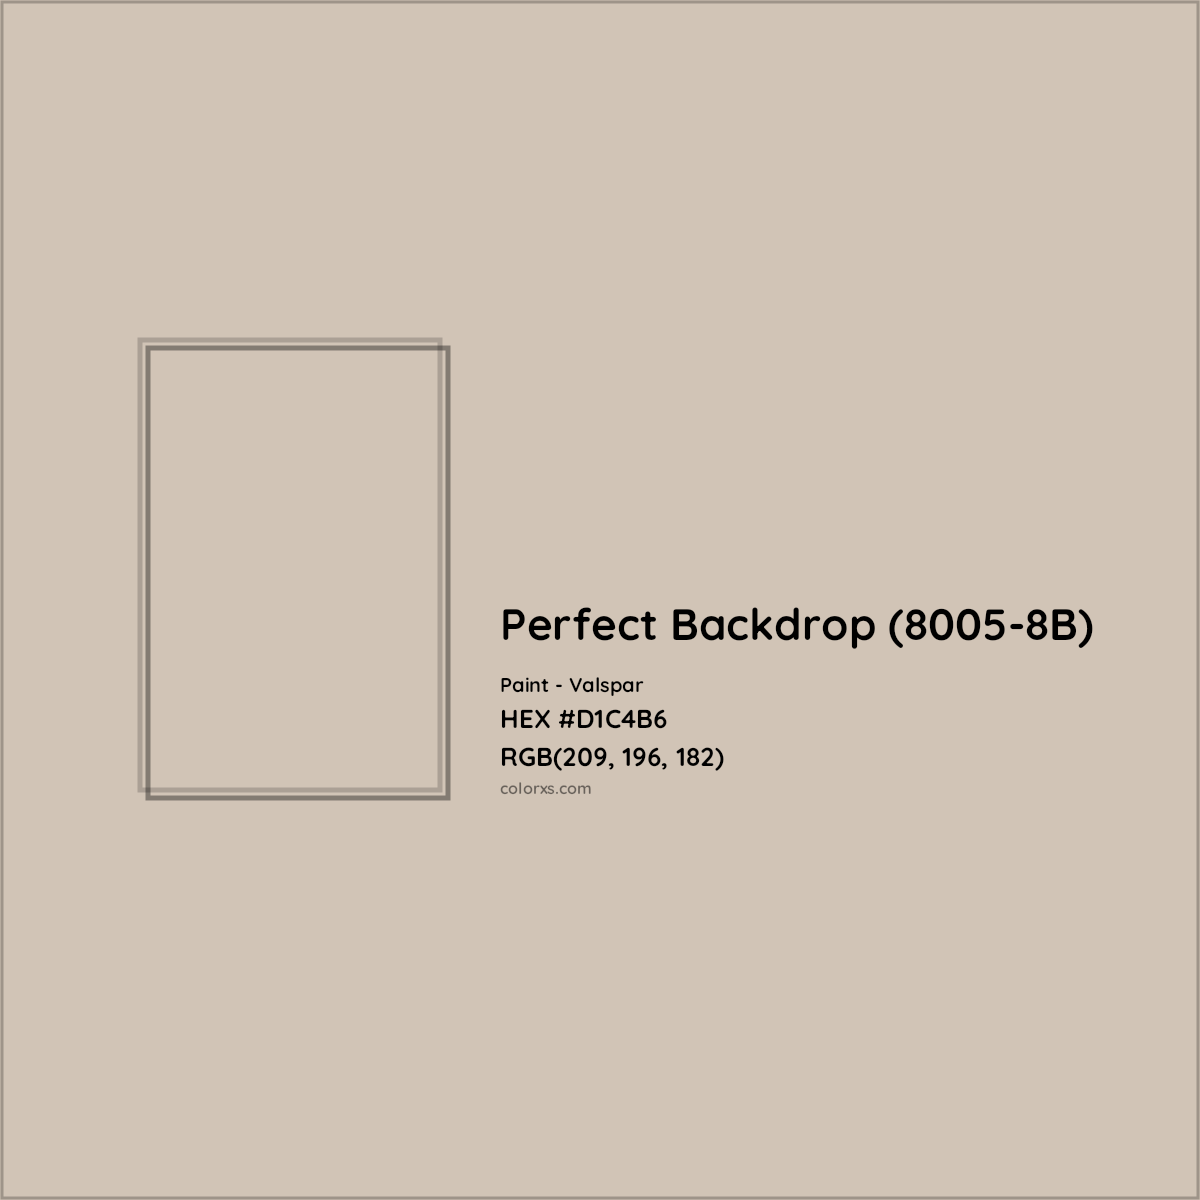 HEX #D1C4B6 Perfect Backdrop (8005-8B) Paint Valspar - Color Code